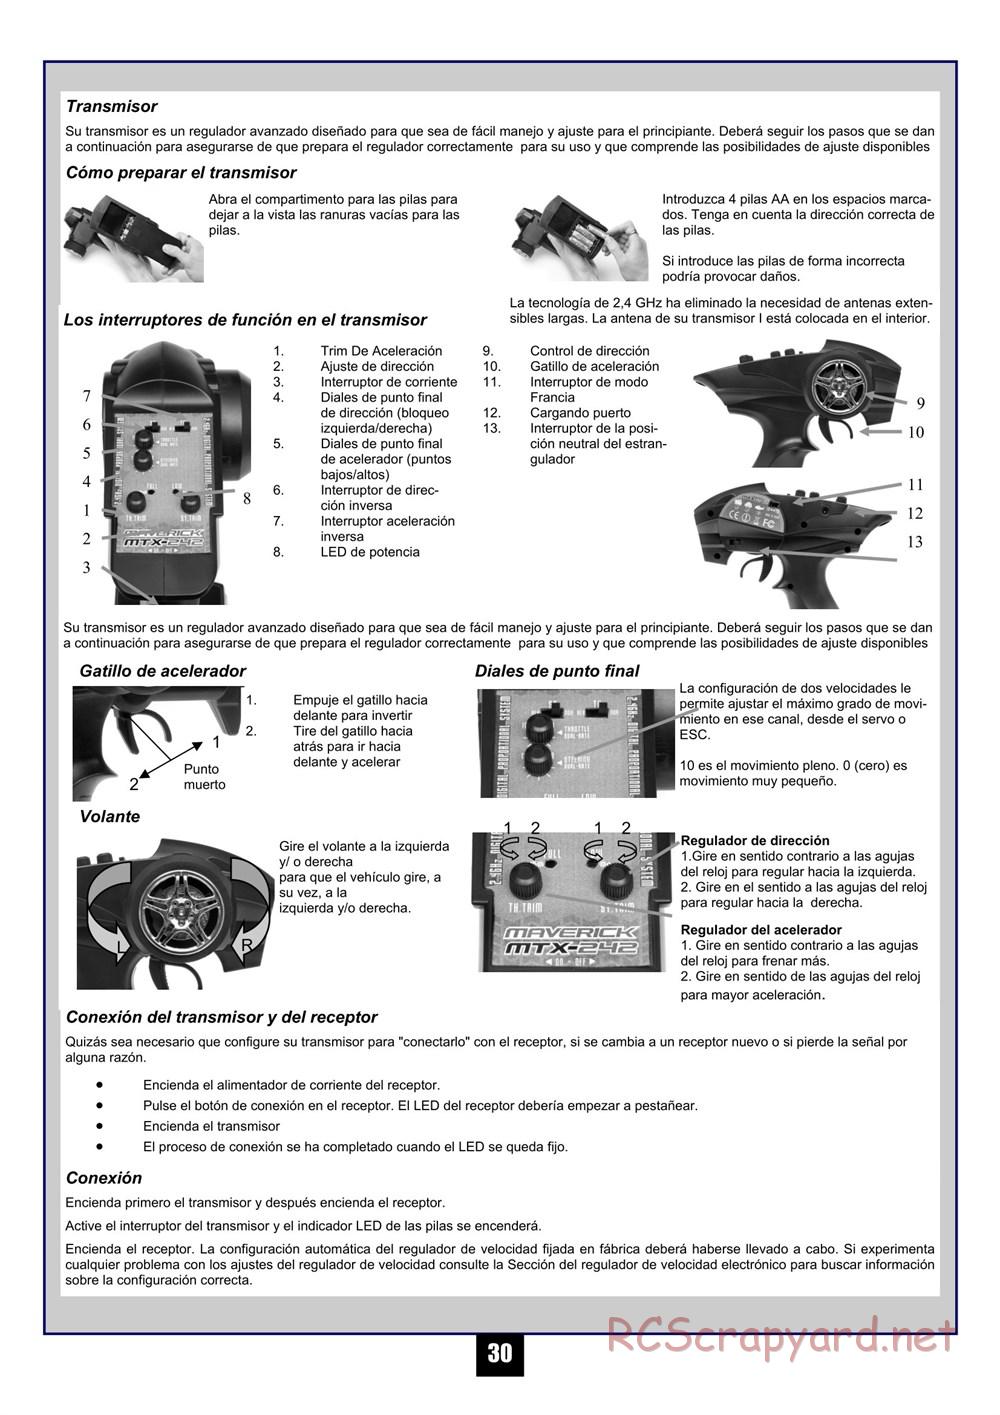 HPI - Maverick Blackout MT - Manual - Page 31